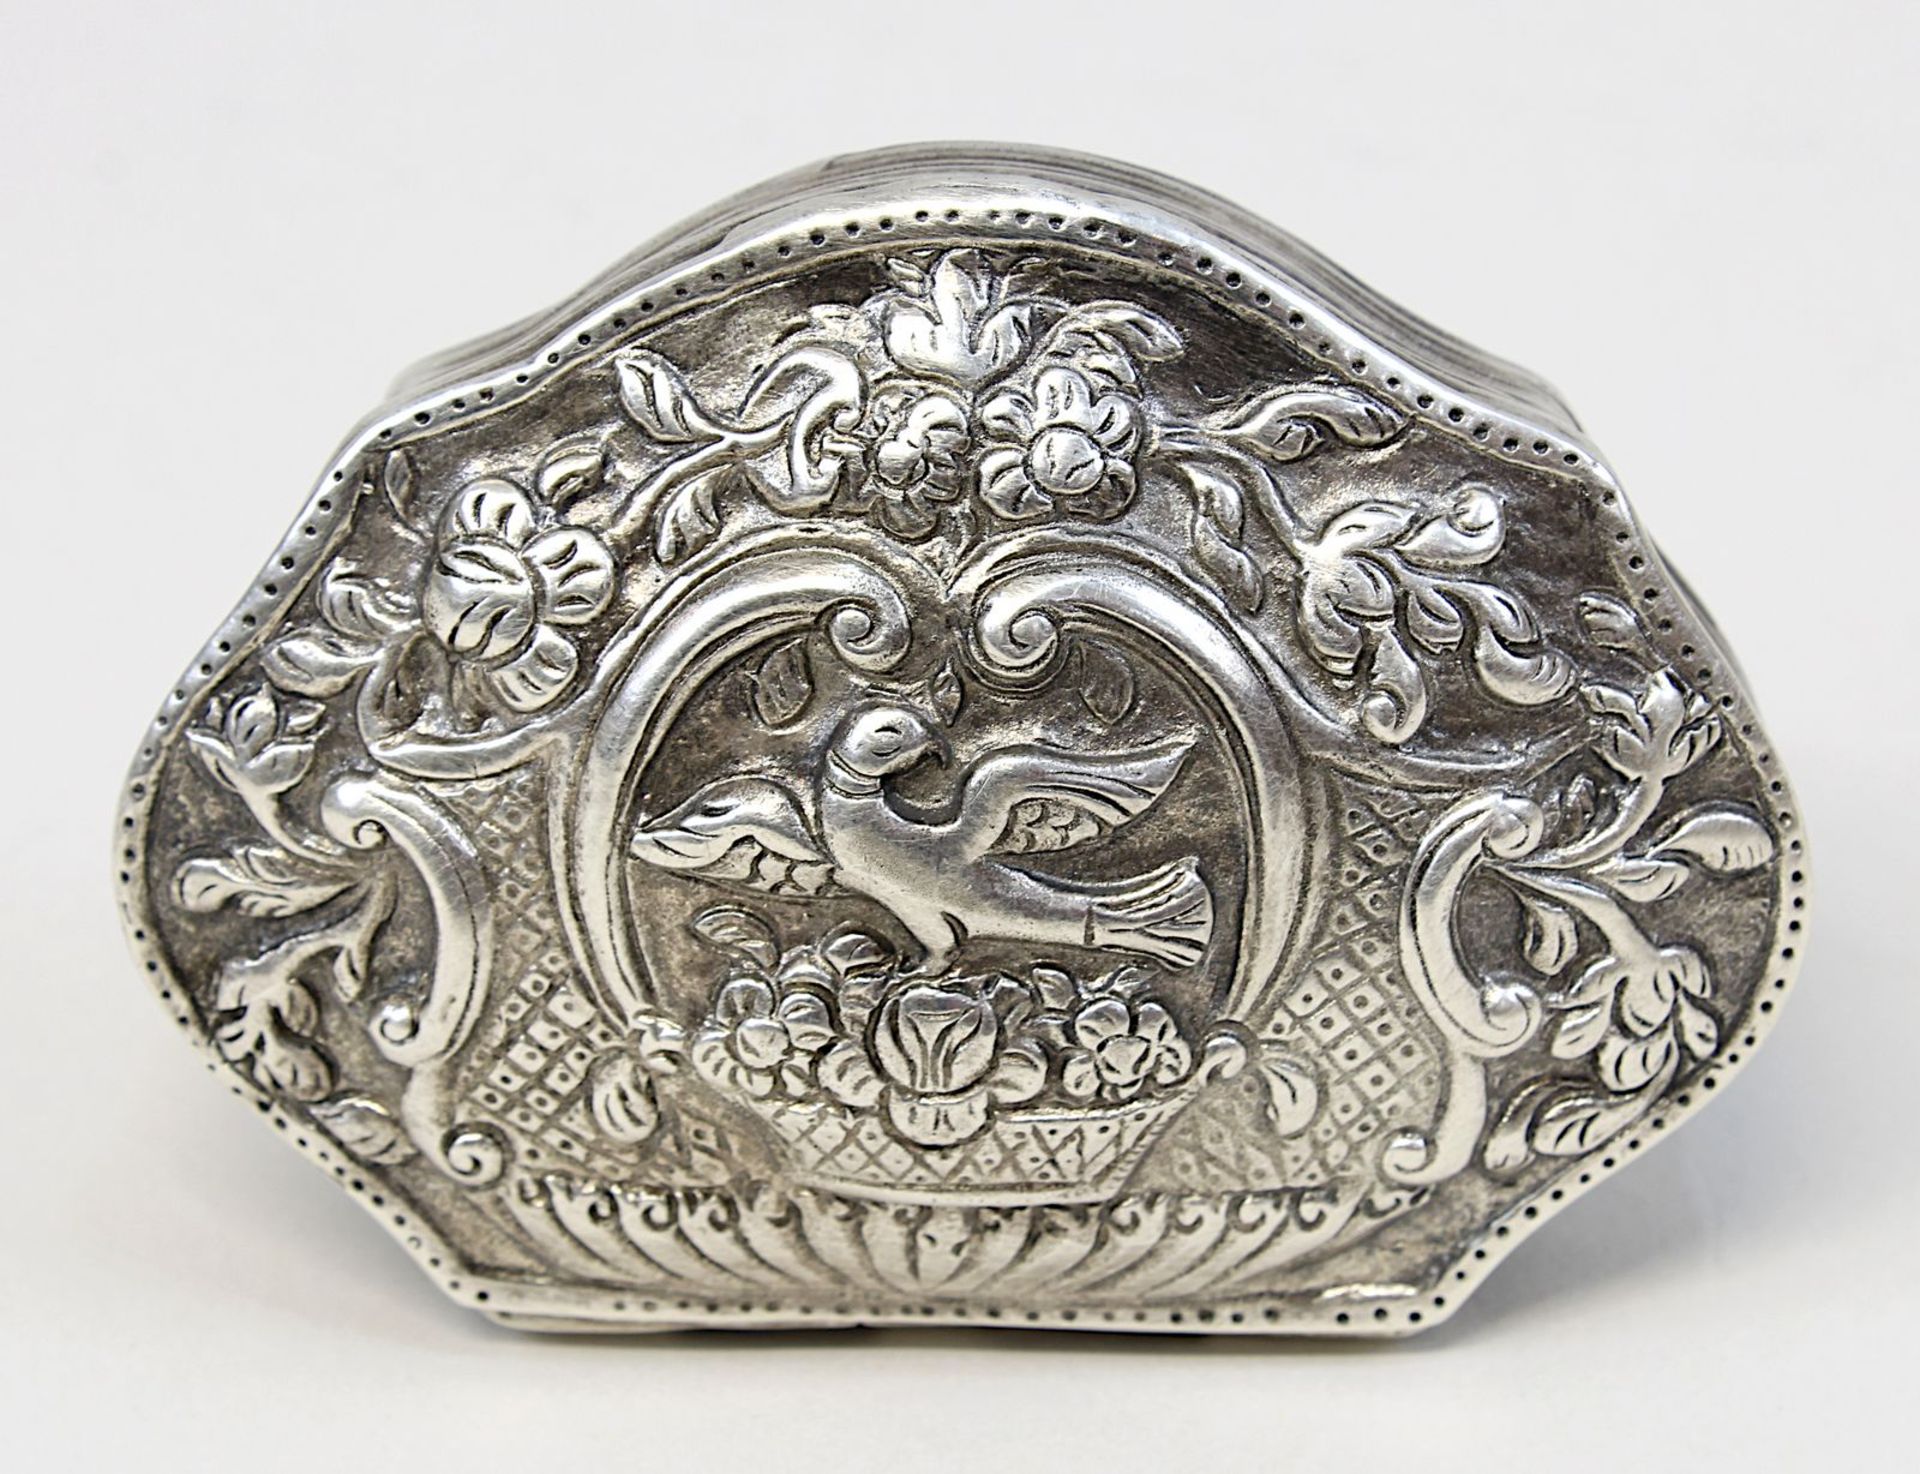 Silberdose mit Vogel- und Schiffsmotiv, geschweifte Form mit anscharniertem Deckel, getriebener - Image 2 of 3